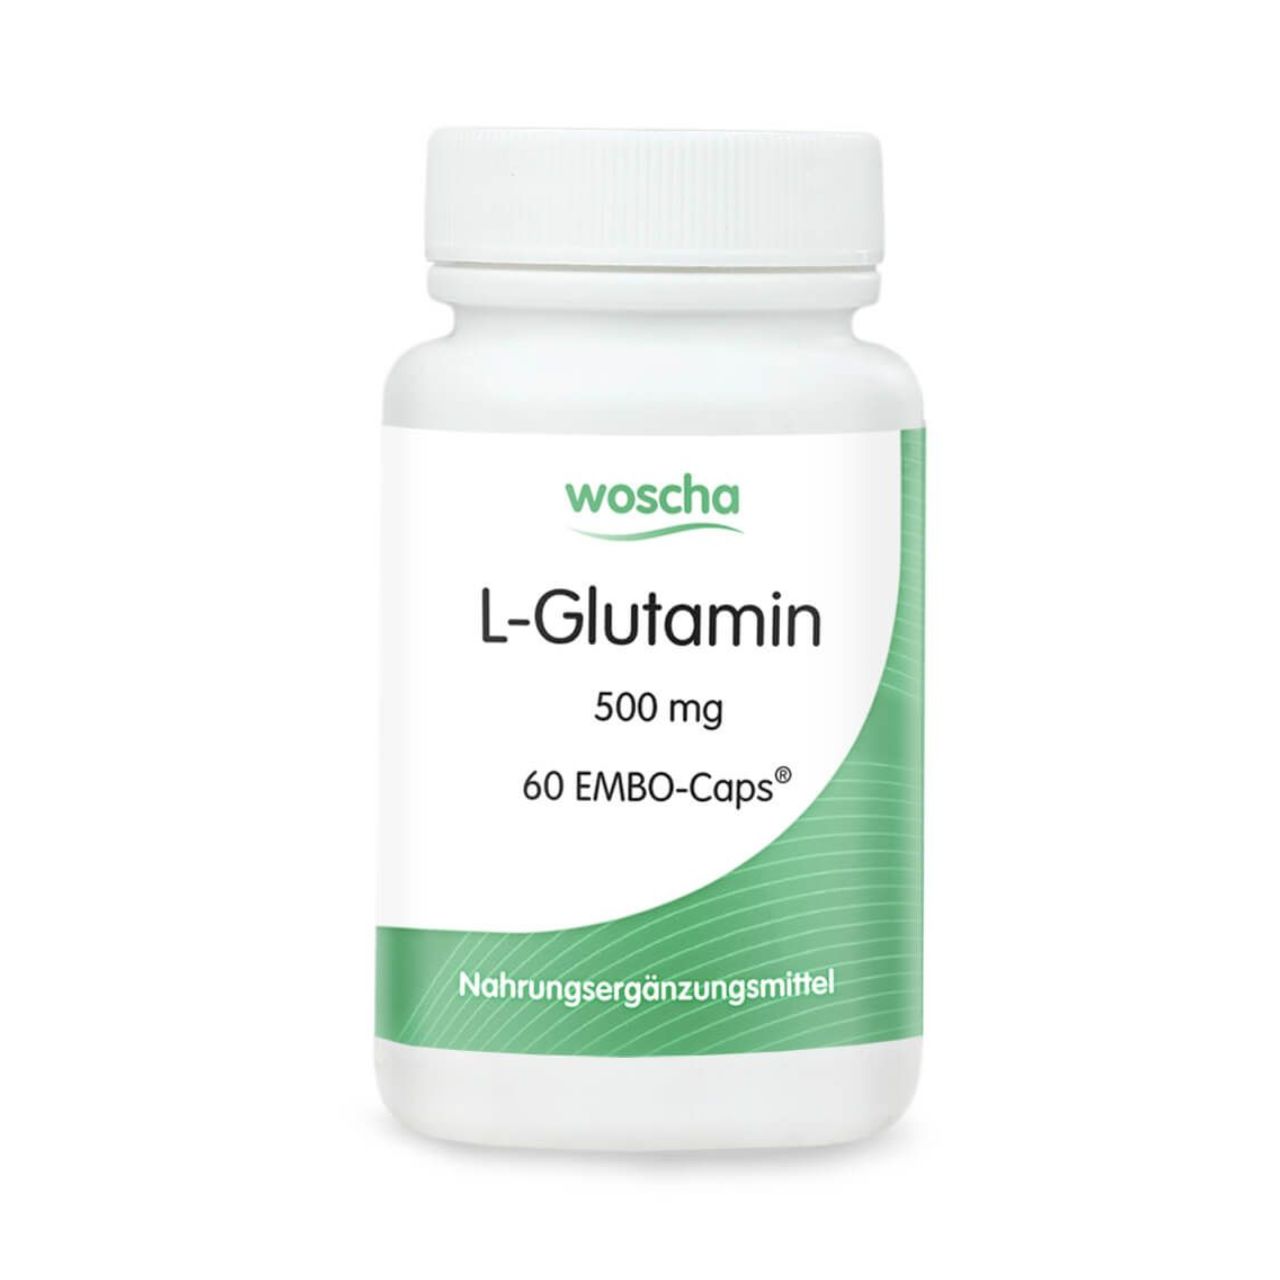 Woscha L-Glutamin 500 Milligramm von podo medi beinhaltet 60 EMBO-CAPS